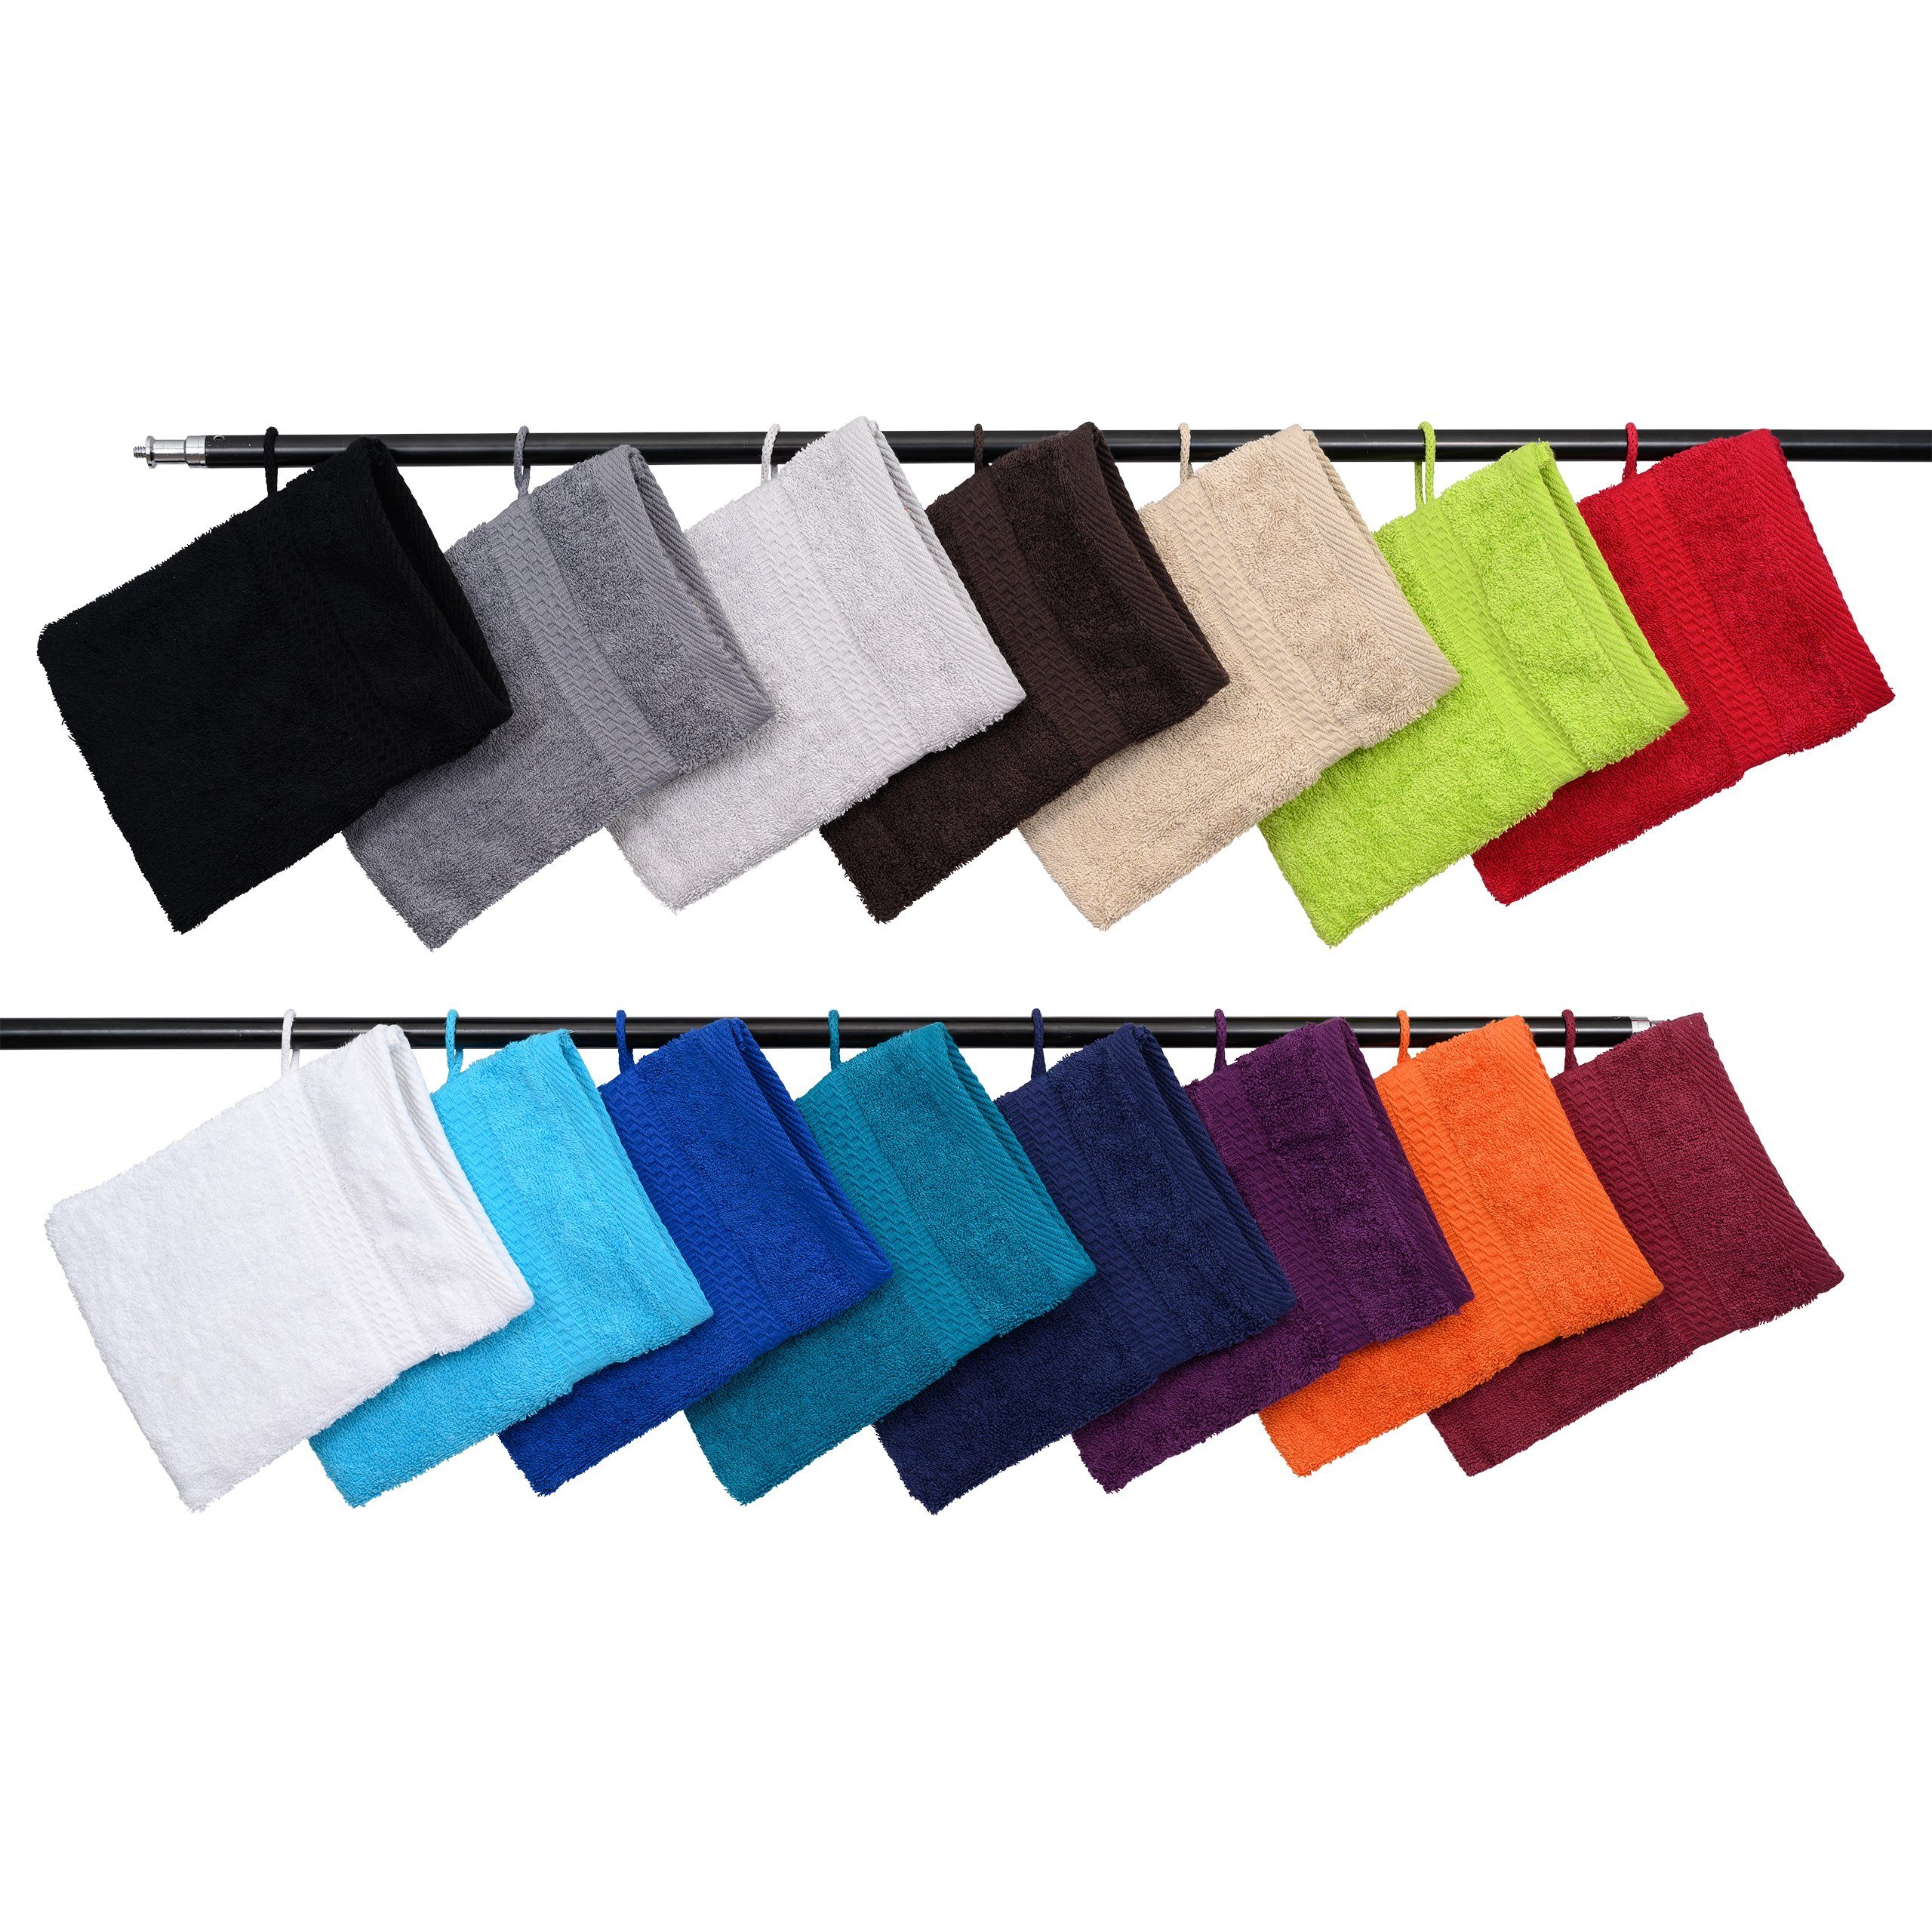 Hometex Premium Textiles Waschhandschuh Waschhandschuh in vielen verschiedenen Farben & im praktischen 10er Set Anthrazit